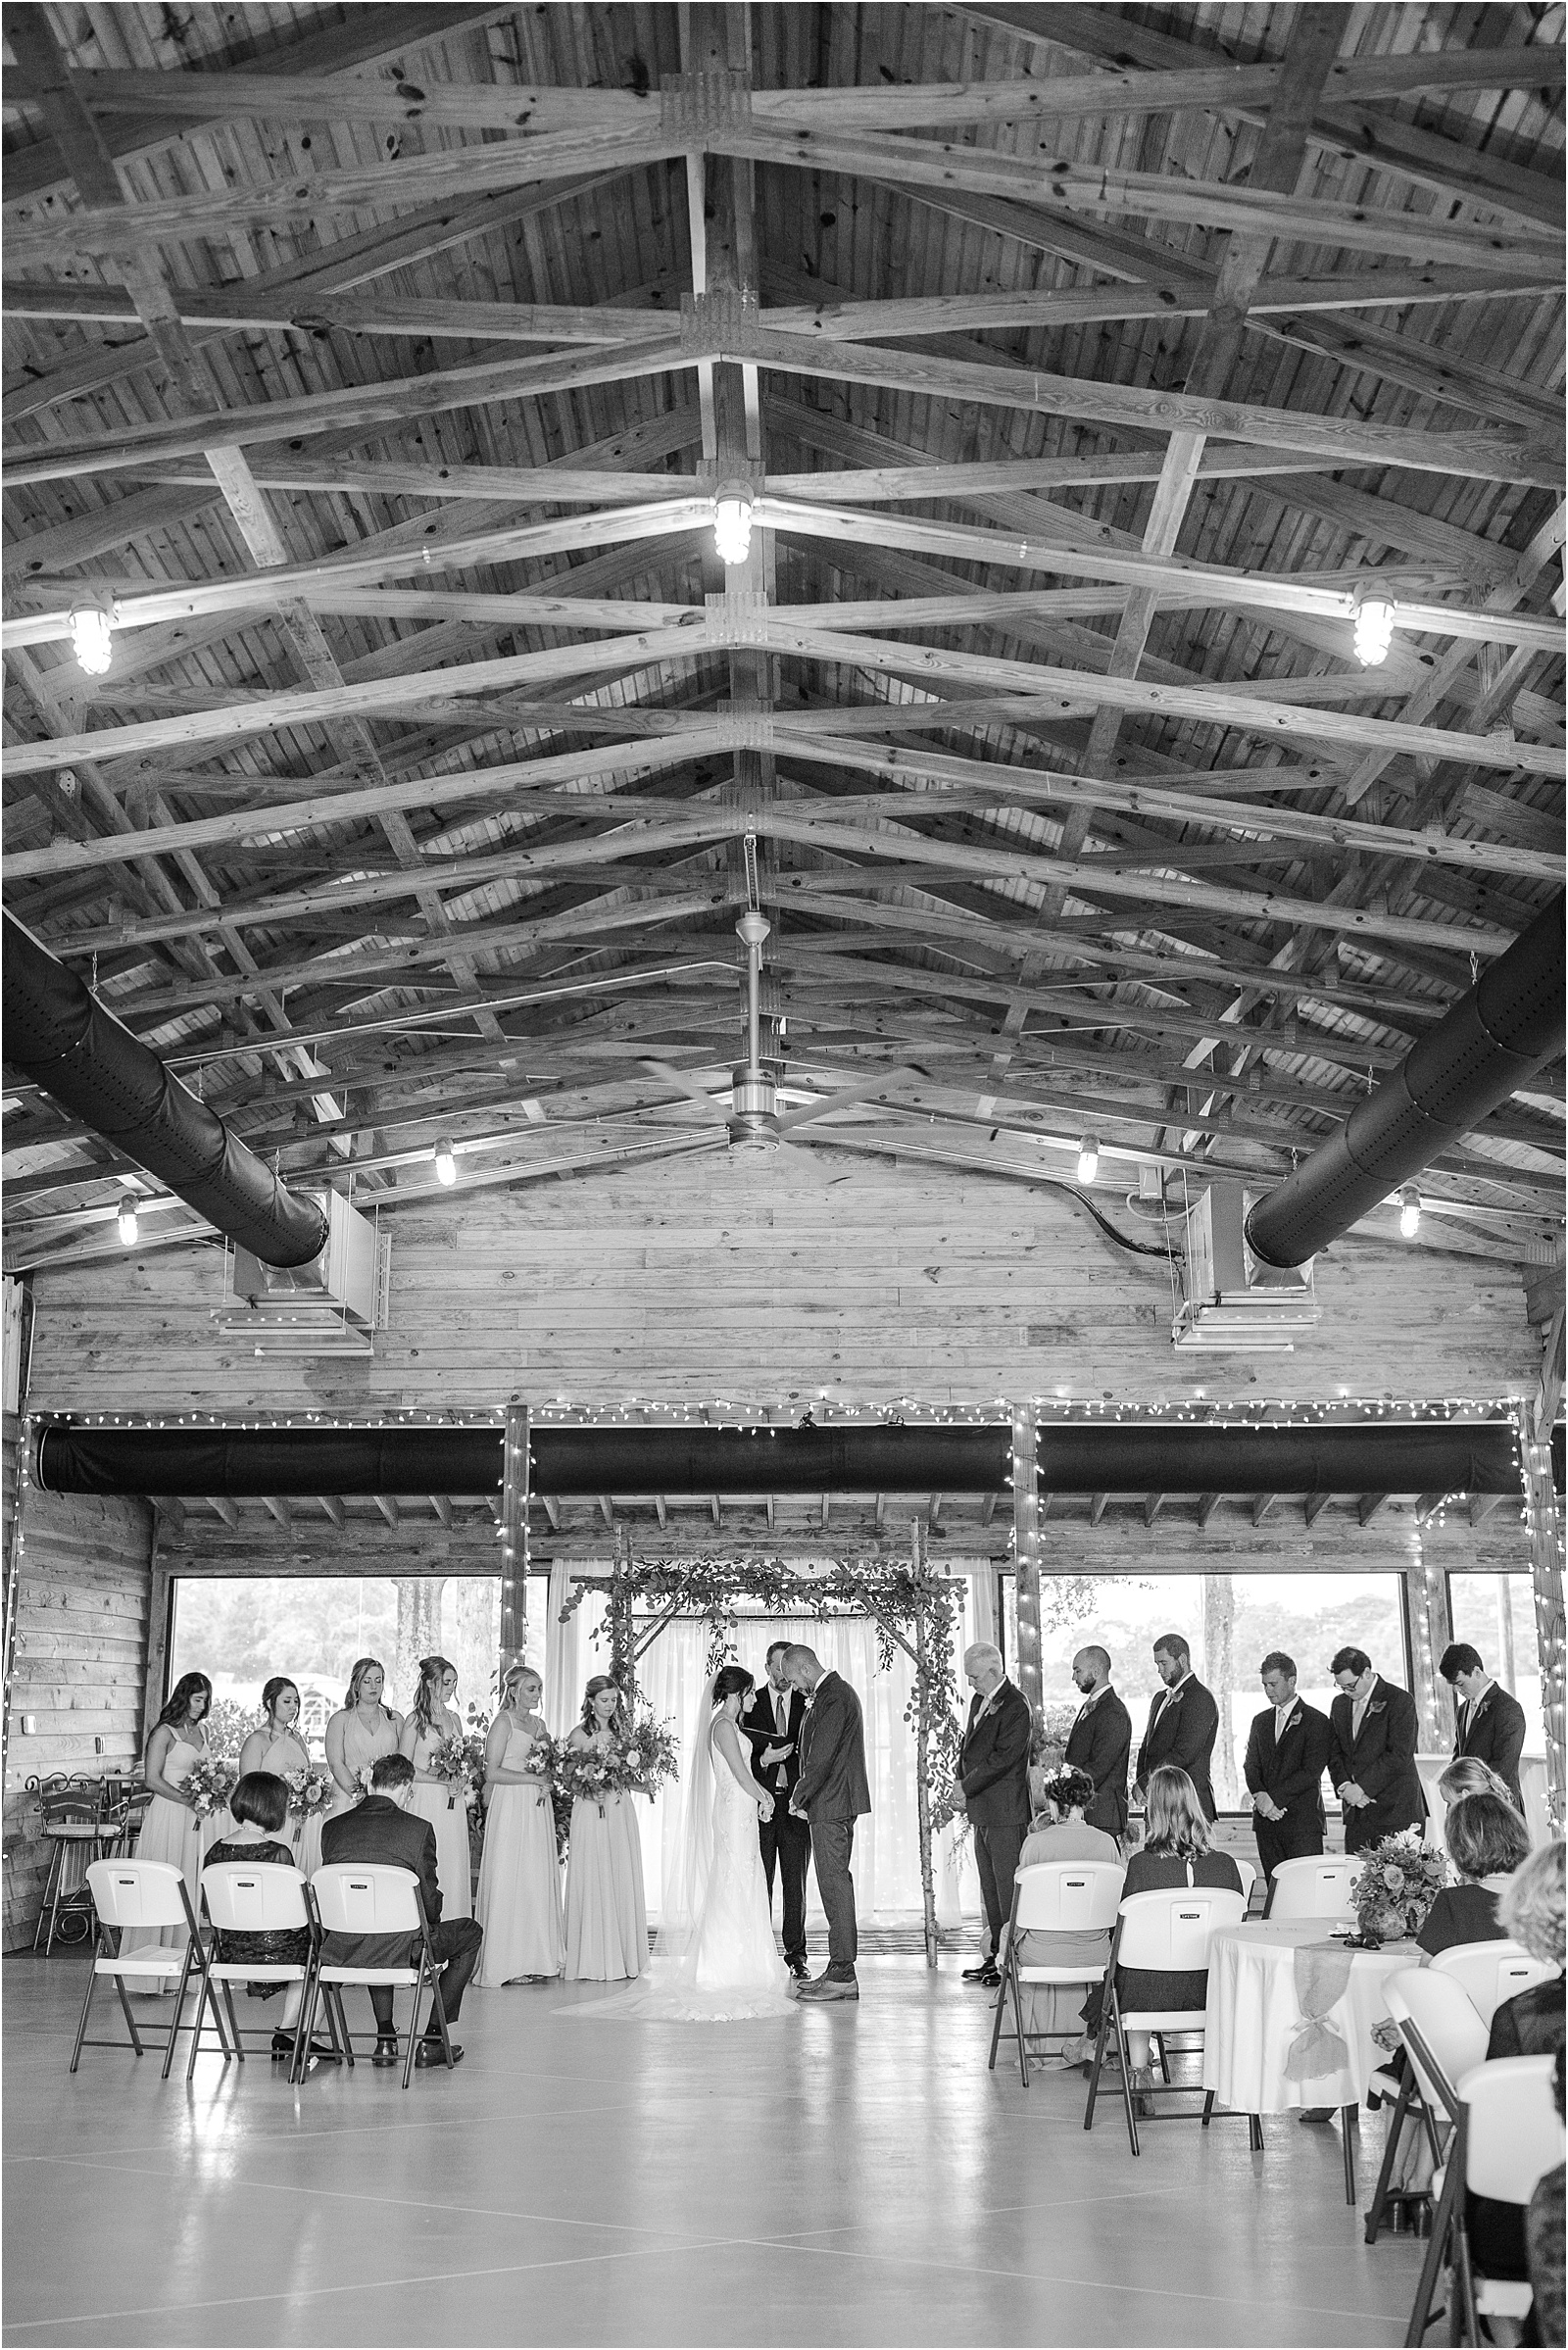 Barn wedding venue in Anderson SC with a wedding ceremony